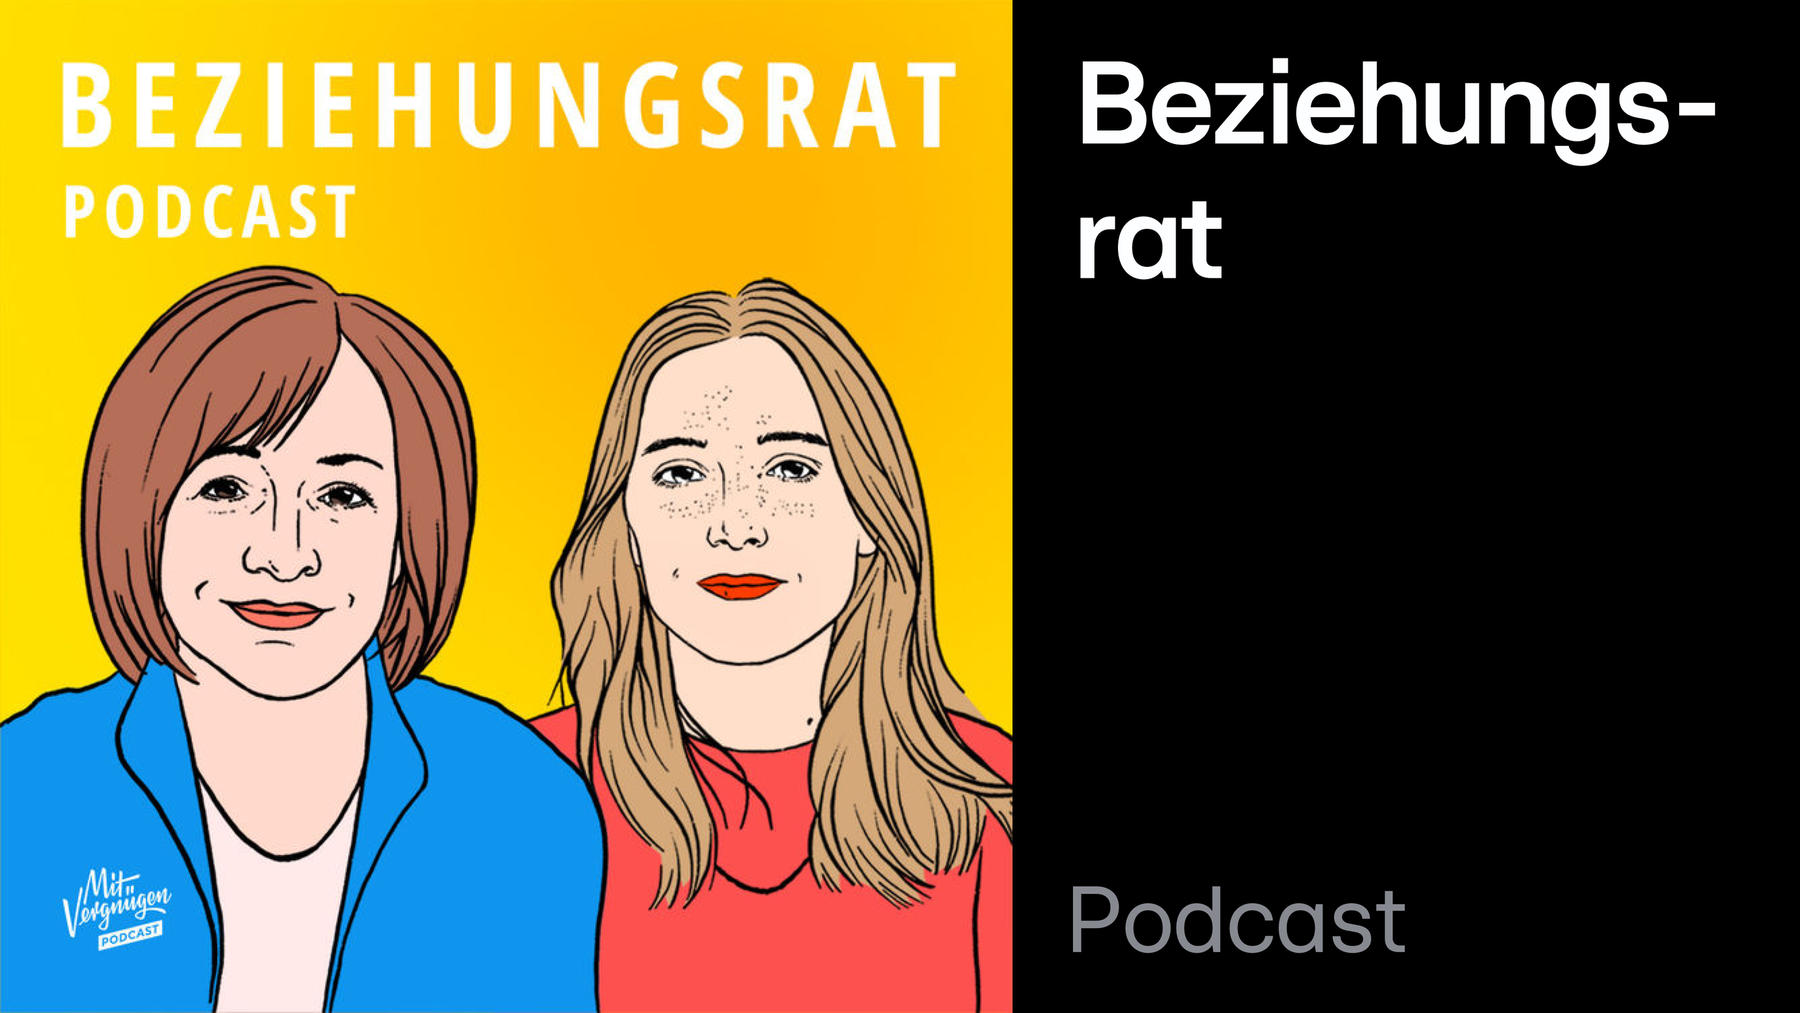 Podcast: Beziehungsrat (mit Vergnügen)